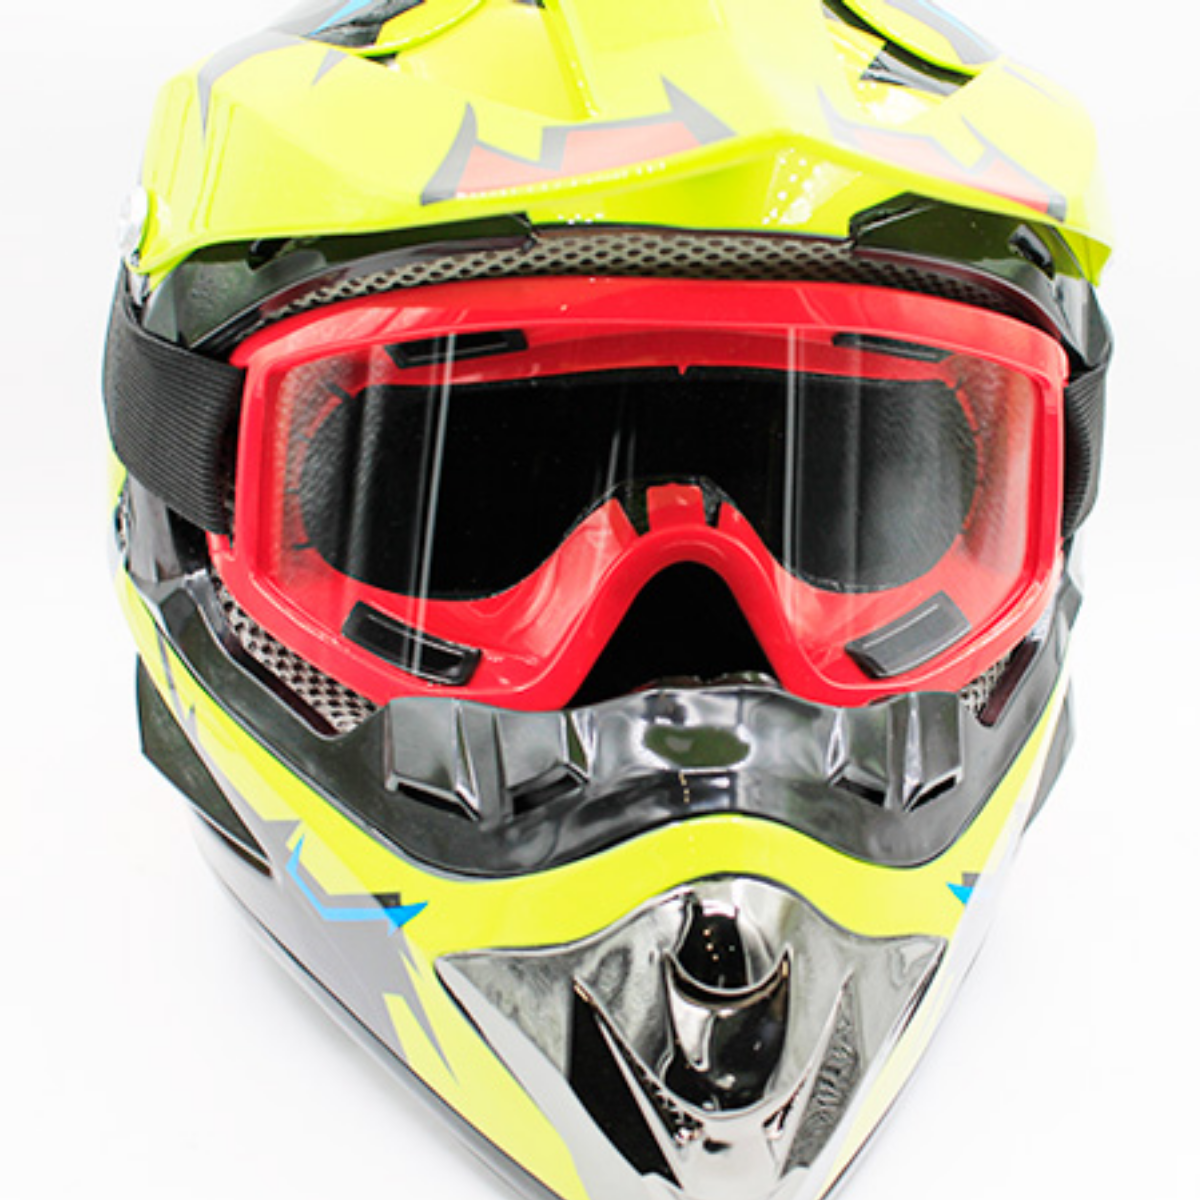 Очки защитные горнолыжные, маска для зимних видов спорта.